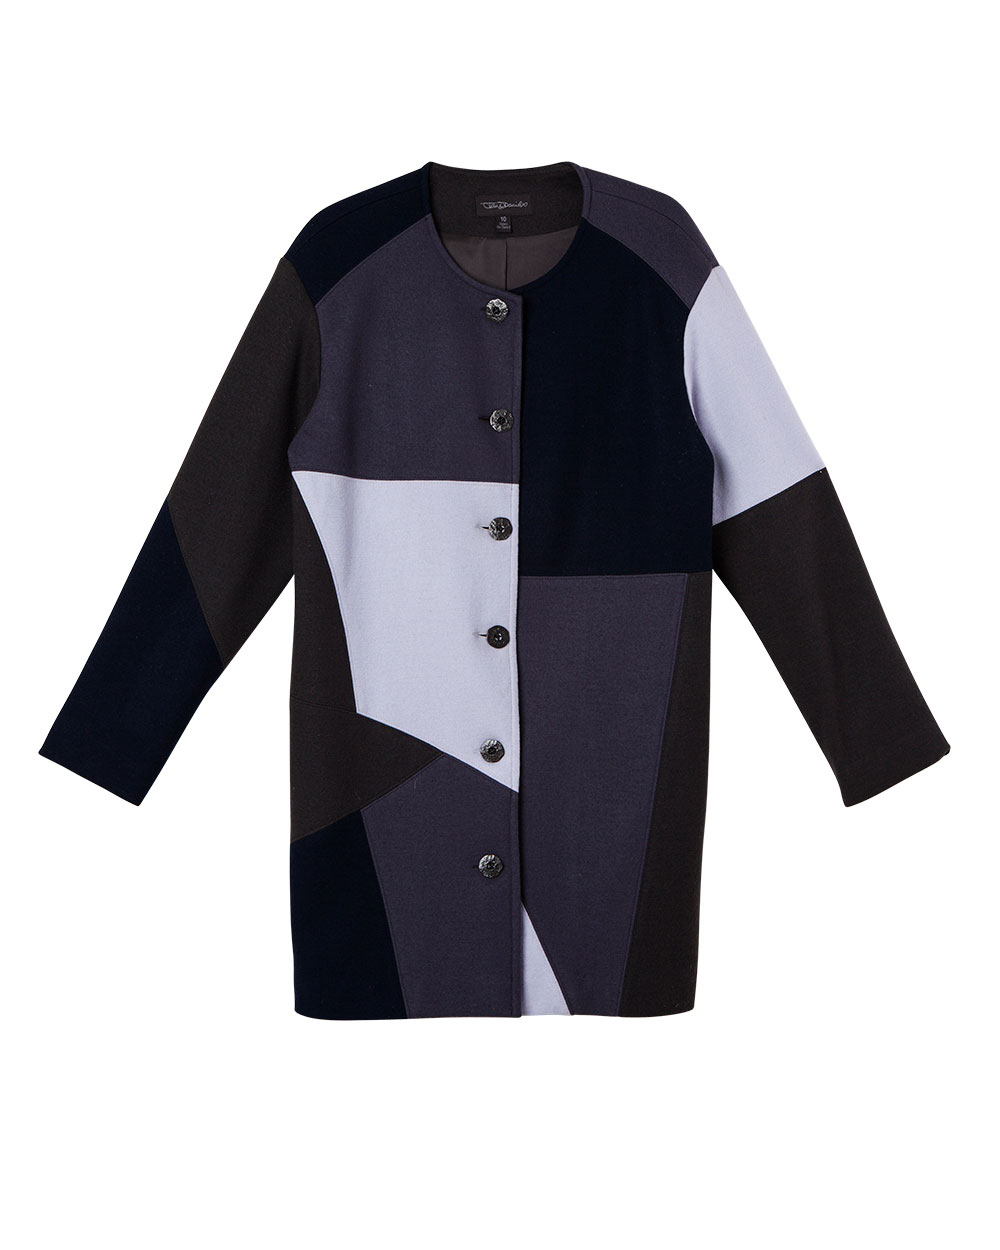 Jane Daniels wool jacket, $1095